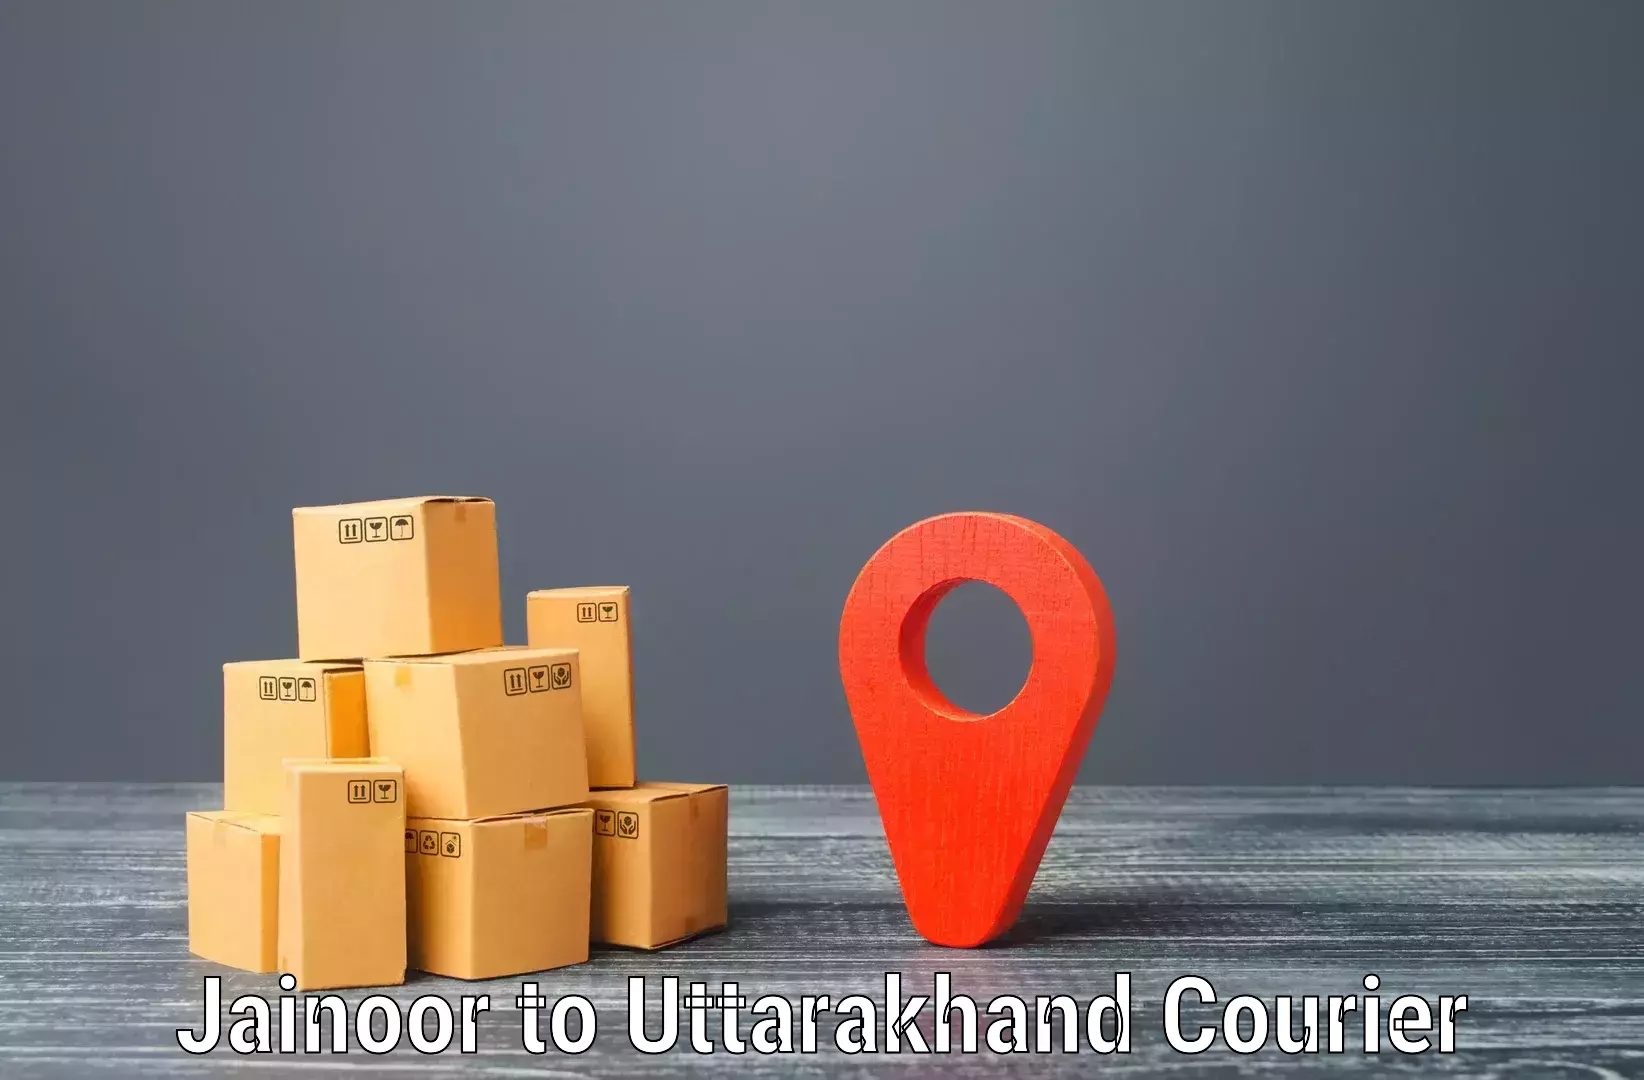 Urgent courier needs Jainoor to Rudrapur